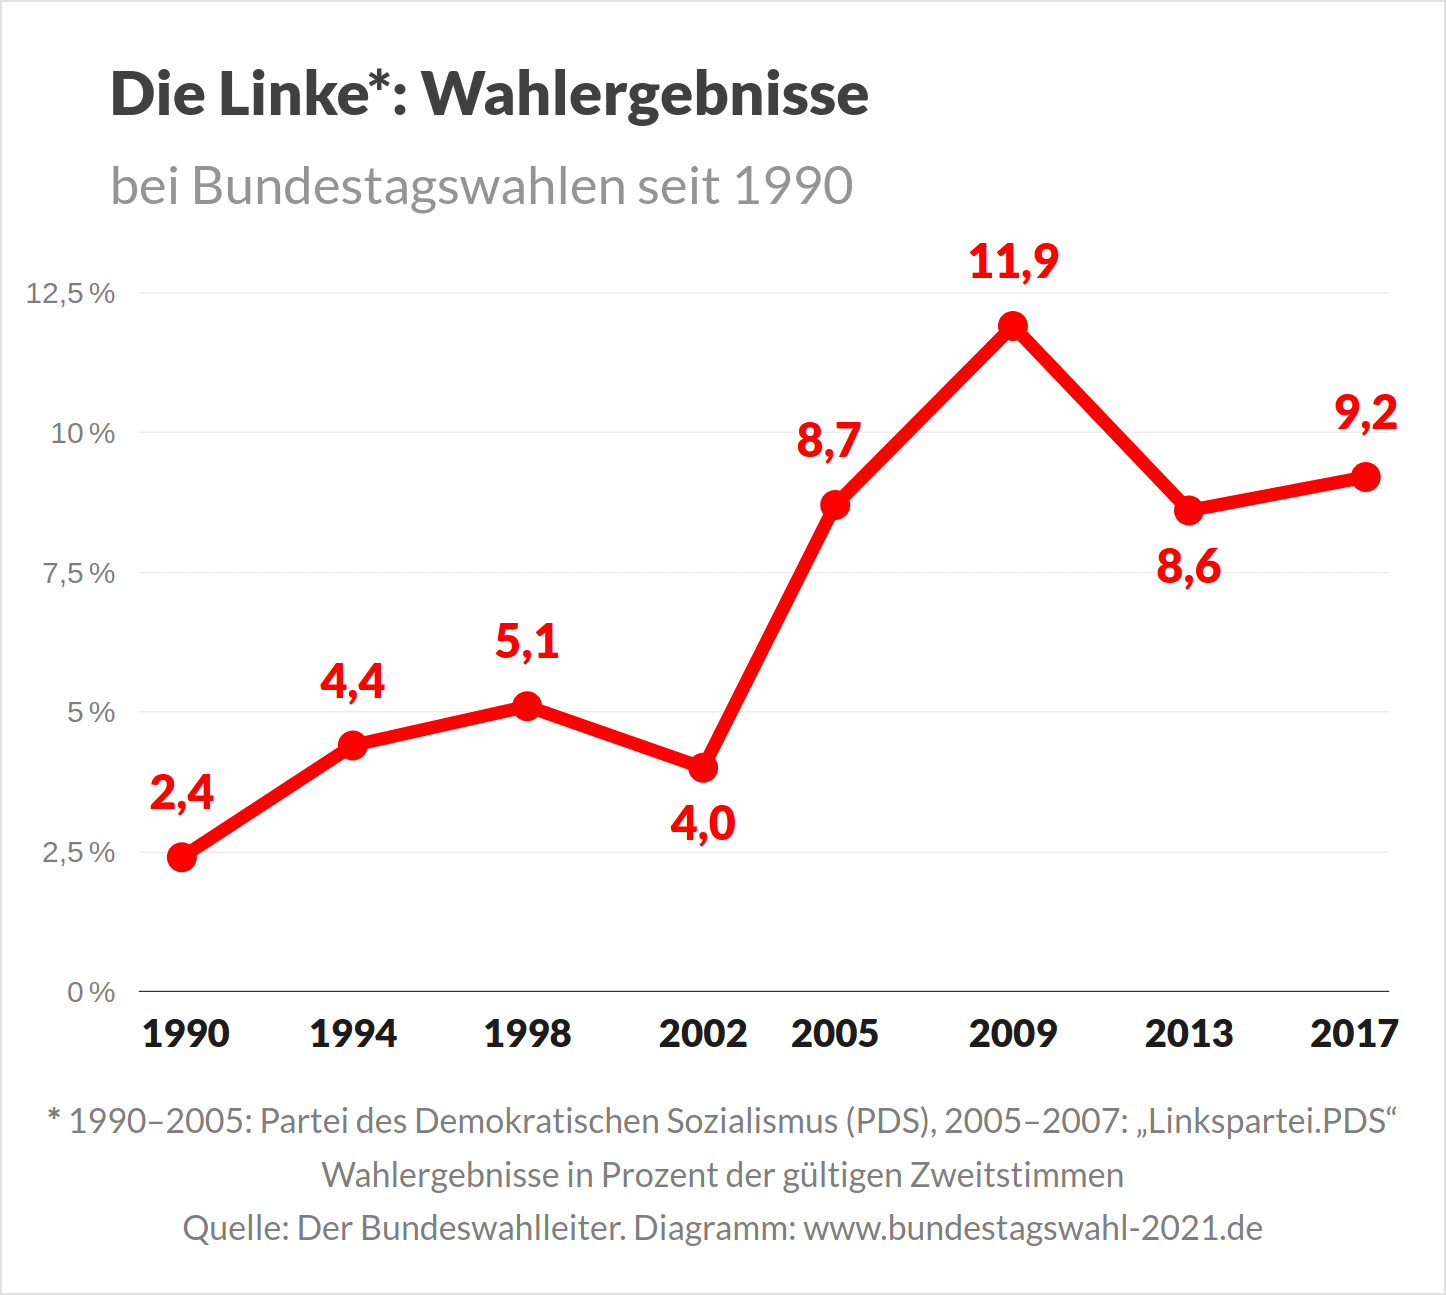 Die Linke bei Bundestagswahl 2021 - Ergebnisse der Linkspartei bei Bundestagswahlen